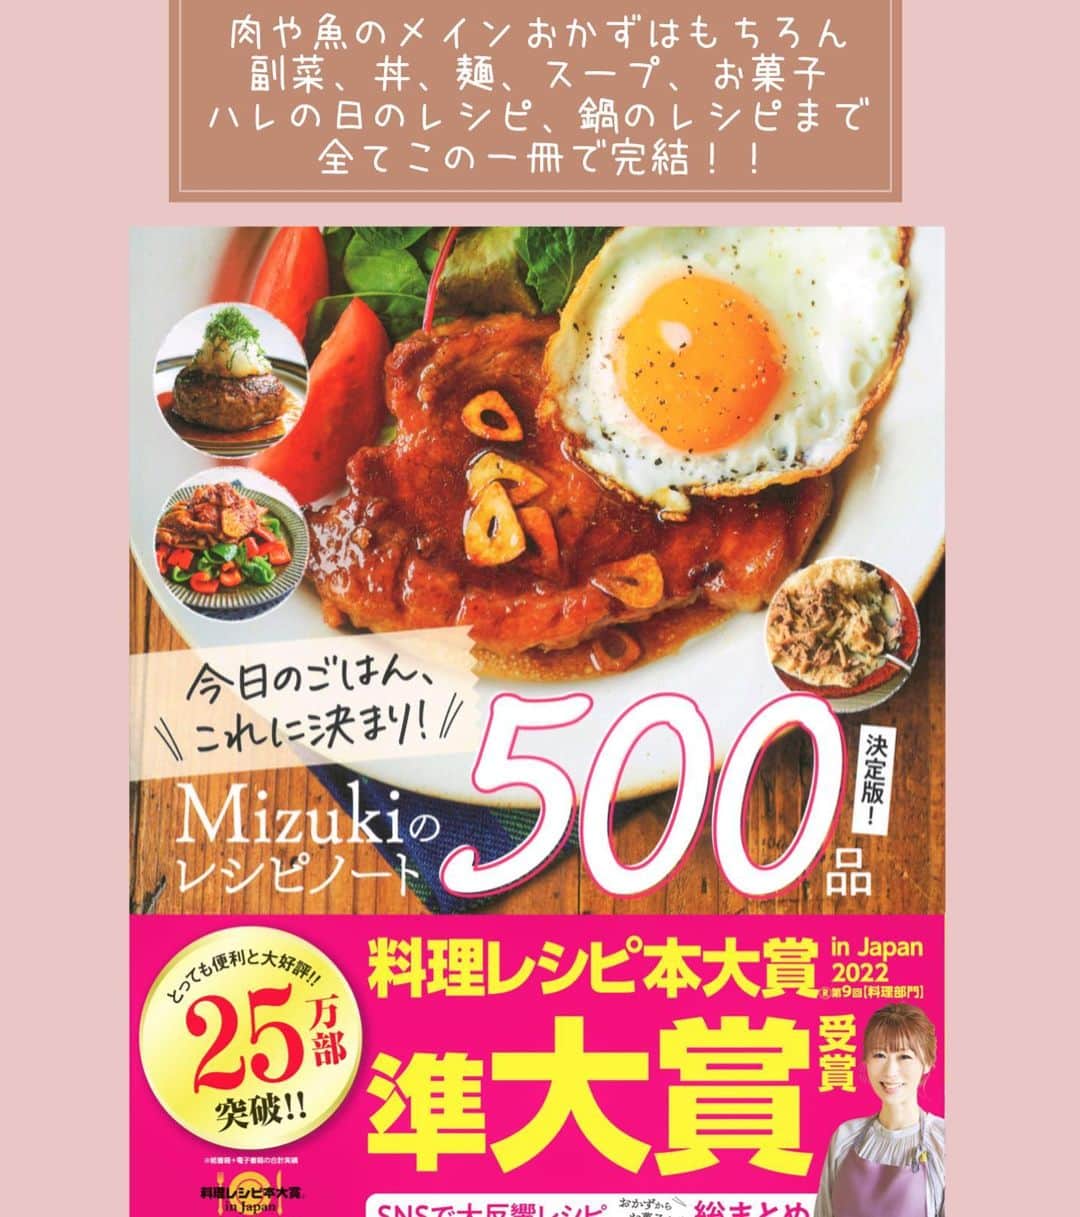 Mizuki【料理ブロガー・簡単レシピ】さんのインスタグラム写真 - (Mizuki【料理ブロガー・簡単レシピ】Instagram)「・指までおいしい💕 ⁡ ［#レシピ ］ ーーーーーーーーーーーーーーーーーーー 手羽中ととうもろこしのバター醤油焼き ーーーーーーーーーーーーーーーーーーー ⁡ ⁡ ⁡ おはようございます☺️ ⁡ 今日ご紹介させていただくのは \ 手羽中ととうもろこしのバター醤油焼き / (再掲載✨) ⁡ 売り場にとうもろこしが並ぶと 作りたくなるやみつきおかず💕 うま味たっぷりの手羽中と合わせて バター醤油で味付けしました✨ 一緒に焼けるから フライパンひとつでできますよ〜🍳 ⁡ これ、みんな好きな味なので よかったらお試しくださいね😋 ⁡ ⁡ ⁡ ⋱⋰ ⋱⋰ ⋱⋰ ⋱⋰ ⋱⋰ ⋱⋰ ⋱⋰ ☑︎簡単・時短・節約レシピ更新中 @mizuki_31cafe ⁡ ☑︎謎の暮らし＆変なライブ垢 @mizuki_kurashi ⋱⋰ ⋱⋰ ⋱⋰ ⋱⋰ ⋱⋰ ⋱⋰ ⋱⋰ ⁡ ⁡ ⁡ ＿＿＿＿＿＿＿＿＿＿＿＿＿＿＿＿＿＿＿ 【2人分】 手羽中...10本 とうもろこし...1本 ●塩こしょう...少々 ●片栗粉...大2 サラダ油...大2 ☆醤油・みりん...各大1.5 ☆砂糖...小1 ☆バター...10g 粗挽き黒こしょう...適量 ⁡ 1.手羽は骨に沿って切り込みを入れる。とうもろこしは長さを4等分に切って、縦4等分に切る。一緒にポリ袋に入れ、●を加えて振ってまぶす。☆は合わせておく。 2.フライパンにサラダ油を中火で熱し、手羽(皮を下にする)ととうもろこし(実を下にする)を並べて焼く。焼き色が付いたら裏返し、蓋をして弱めの中火で3〜4分蒸し焼きにする。 3.火が通ったら☆を加えて煮からめ、黒こしょうを振る。 ￣￣￣￣￣￣￣￣￣￣￣￣￣￣￣￣￣￣￣ ⁡ ⁡ 《ポイント》 ♦︎とうもろこしを切る時はかたいので(※切れないかたさではありません✨)注意してください☆どうしても切りにくい場合は予め少しレンチンしてもOK！ちなみに切り口を上にすると切りやすいです♩ ♦︎手羽ととうもろこしはしっかり焼き色が付くまで焼いて、裏返します♩ ♦︎バターは有塩バターです♩ ♦︎手羽の代わりに鶏もも肉で作っても◯ ⁡ ⁡ ⁡ ⁡ ⁡ ⁡ ⋱⋰ ⋱⋰ ⋱⋰ ⋱⋰ ⋱⋰ ⋱⋰ ⋱⋰  愛用している調理器具・器など   #楽天ROOMに載せてます ‎𐩢𐩺  (ハイライトから飛べます🕊️) ⋱⋰ ⋱⋰ ⋱⋰ ⋱⋰ ⋱⋰ ⋱⋰ ⋱⋰ ⁡ ⁡ ⁡ ⁡ ⁡ ✼••┈┈┈┈┈••✼••┈┈┈┈┈••✼ 今日のごはんこれに決まり！ ‎𓊆#Mizukiのレシピノート 500品𓊇 ✼••┈┈┈┈┈••✼••┈┈┈┈┈••✼ ⁡ ˗ˏˋ おかげさまで25万部突破 ˎˊ˗ 料理レシピ本大賞準大賞を受賞しました✨ ⁡ 6000点の中からレシピを厳選し まさかの【500レシピ掲載】 肉や魚のメインおかずはもちろん 副菜、丼、麺、スープ、お菓子 ハレの日のレシピ、鍋のレシピまで 全てこの一冊で完結 𓌉◯𓇋 (全国の書店・ネット書店で発売中) ⁡ ⁡ ⁡ ⁡ ⁡ ⁡ #手羽中ととうもろこしのバター醤油焼きm #手羽中 #とうもろこし #とうもろこしレシピ #鶏肉レシピ #夏野菜 #夏野菜レシピ #節約料理 #簡単料理  #時短料理 #料理 #mizukiレシピ  #アルモンデ #時短レシピ #節約レシピ #簡単レシピ」6月14日 6時28分 - mizuki_31cafe